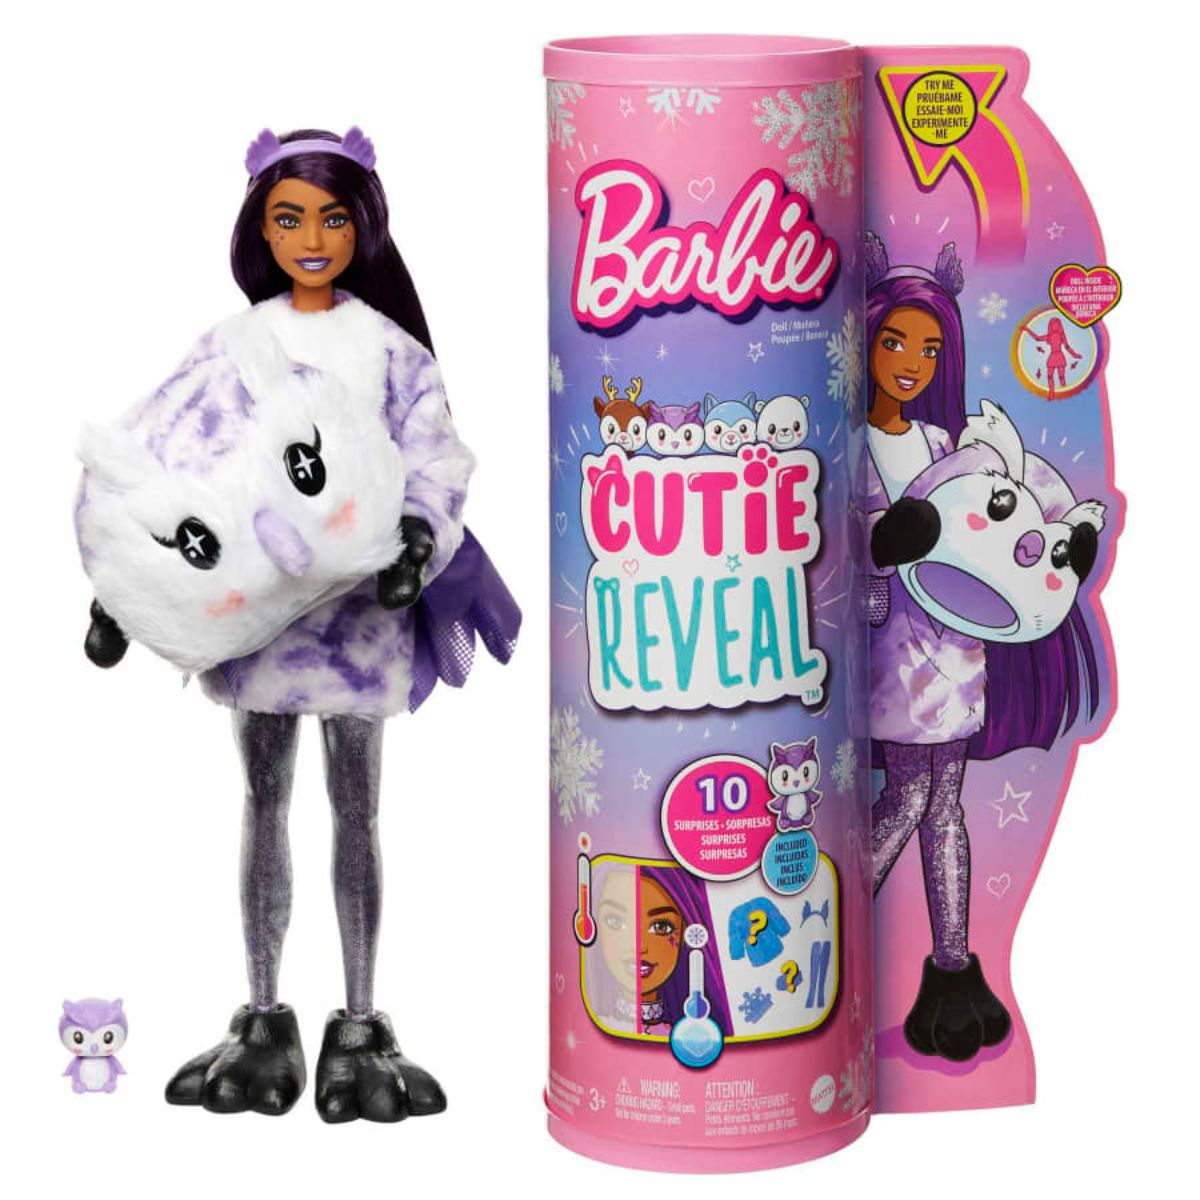 Papusa Barbie Cutie Reveal, Bufnita, cu 10 surprize Barbie imagine noua responsabilitatesociala.ro